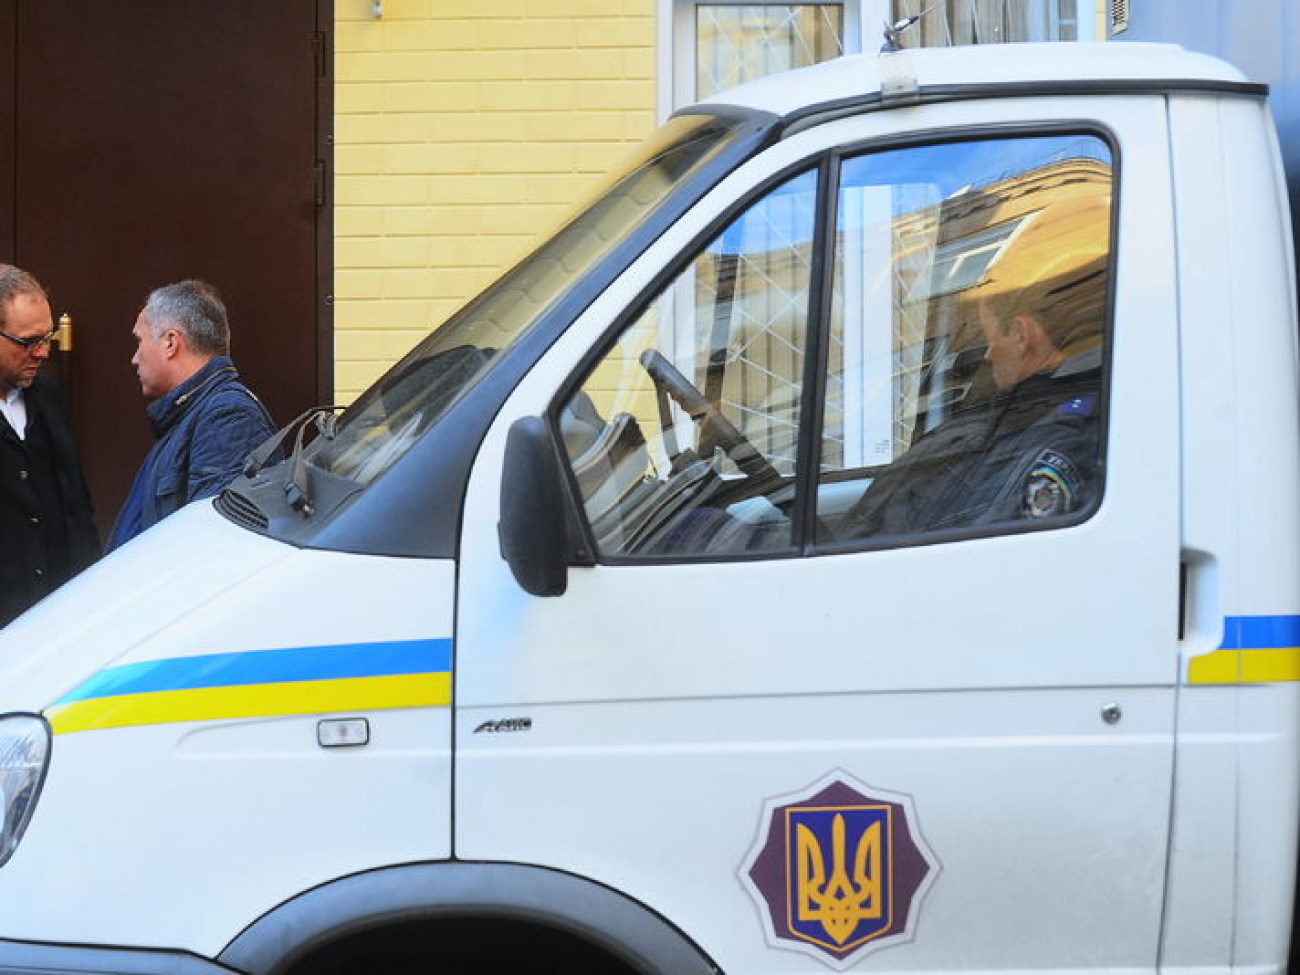 Сергея Власенко засудили, 12 ноября 2013г.